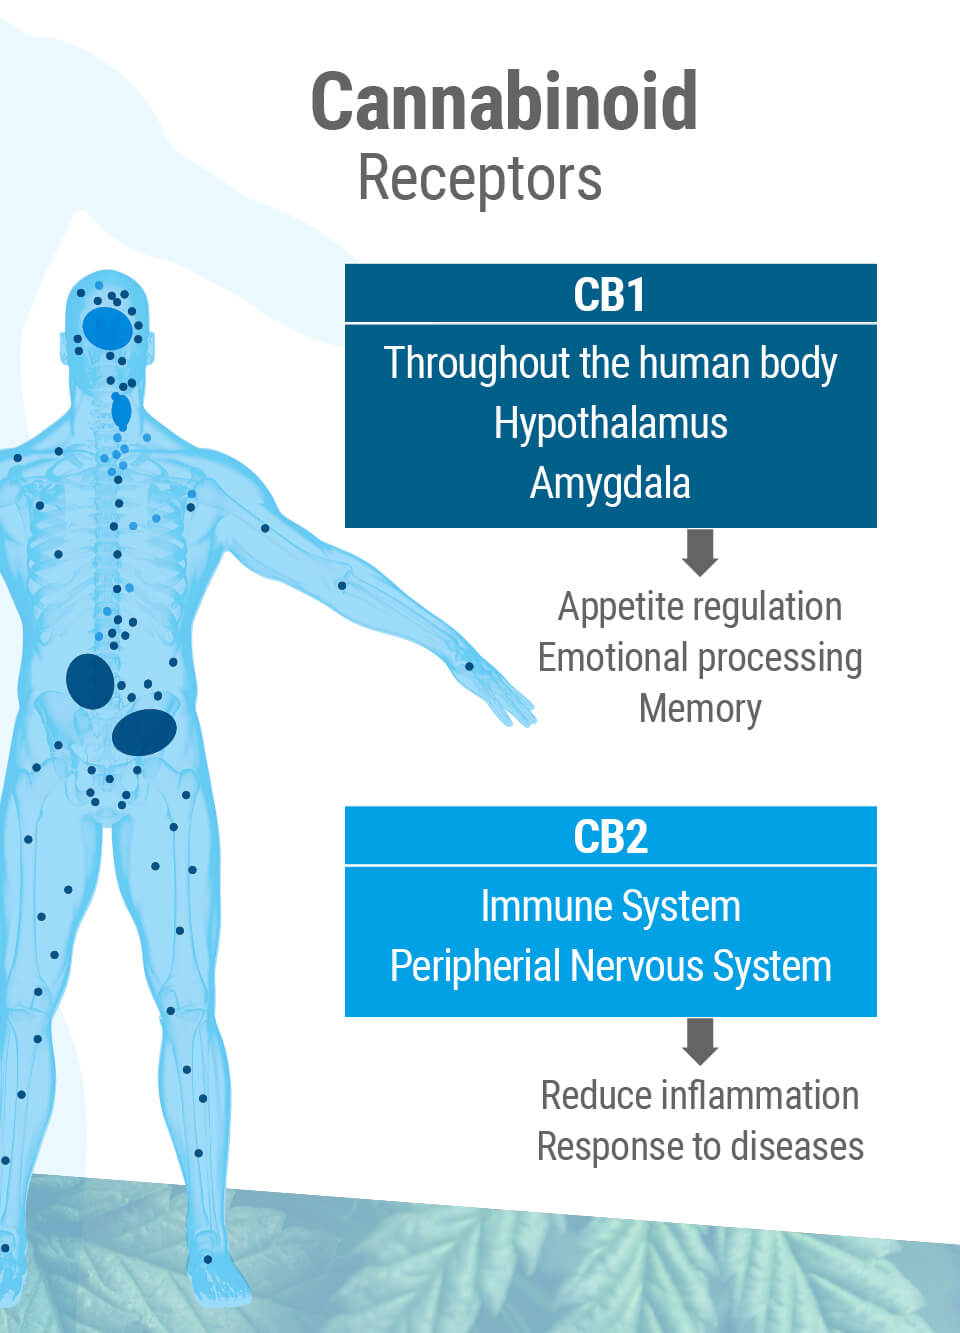 Det endocannabinoida systemet har två huvud-receptorer: CB1 och CB2